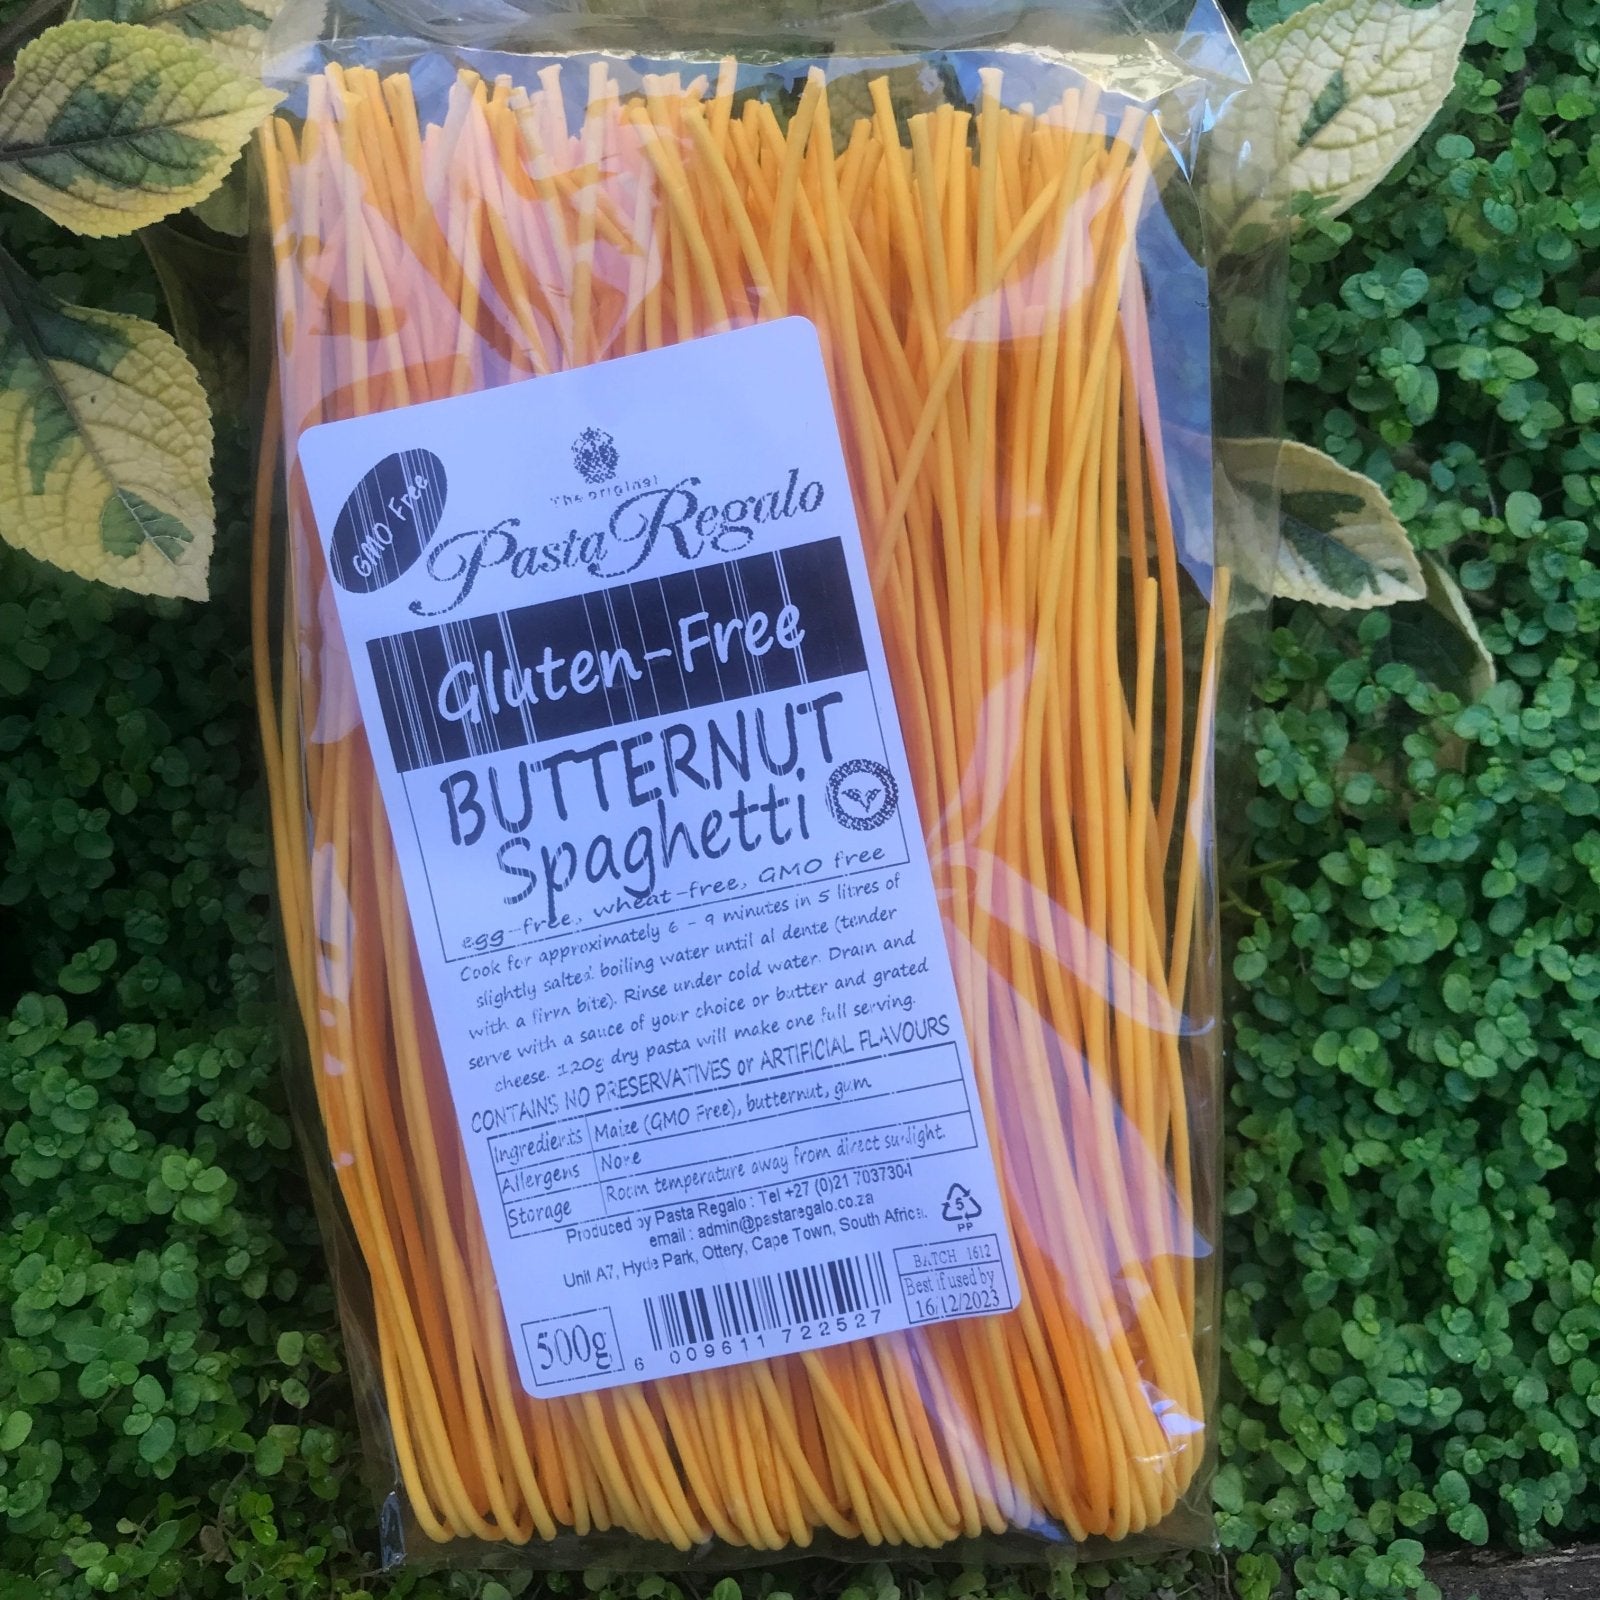 Gluten Free Butternut Spaghetti (500g) - The Deli